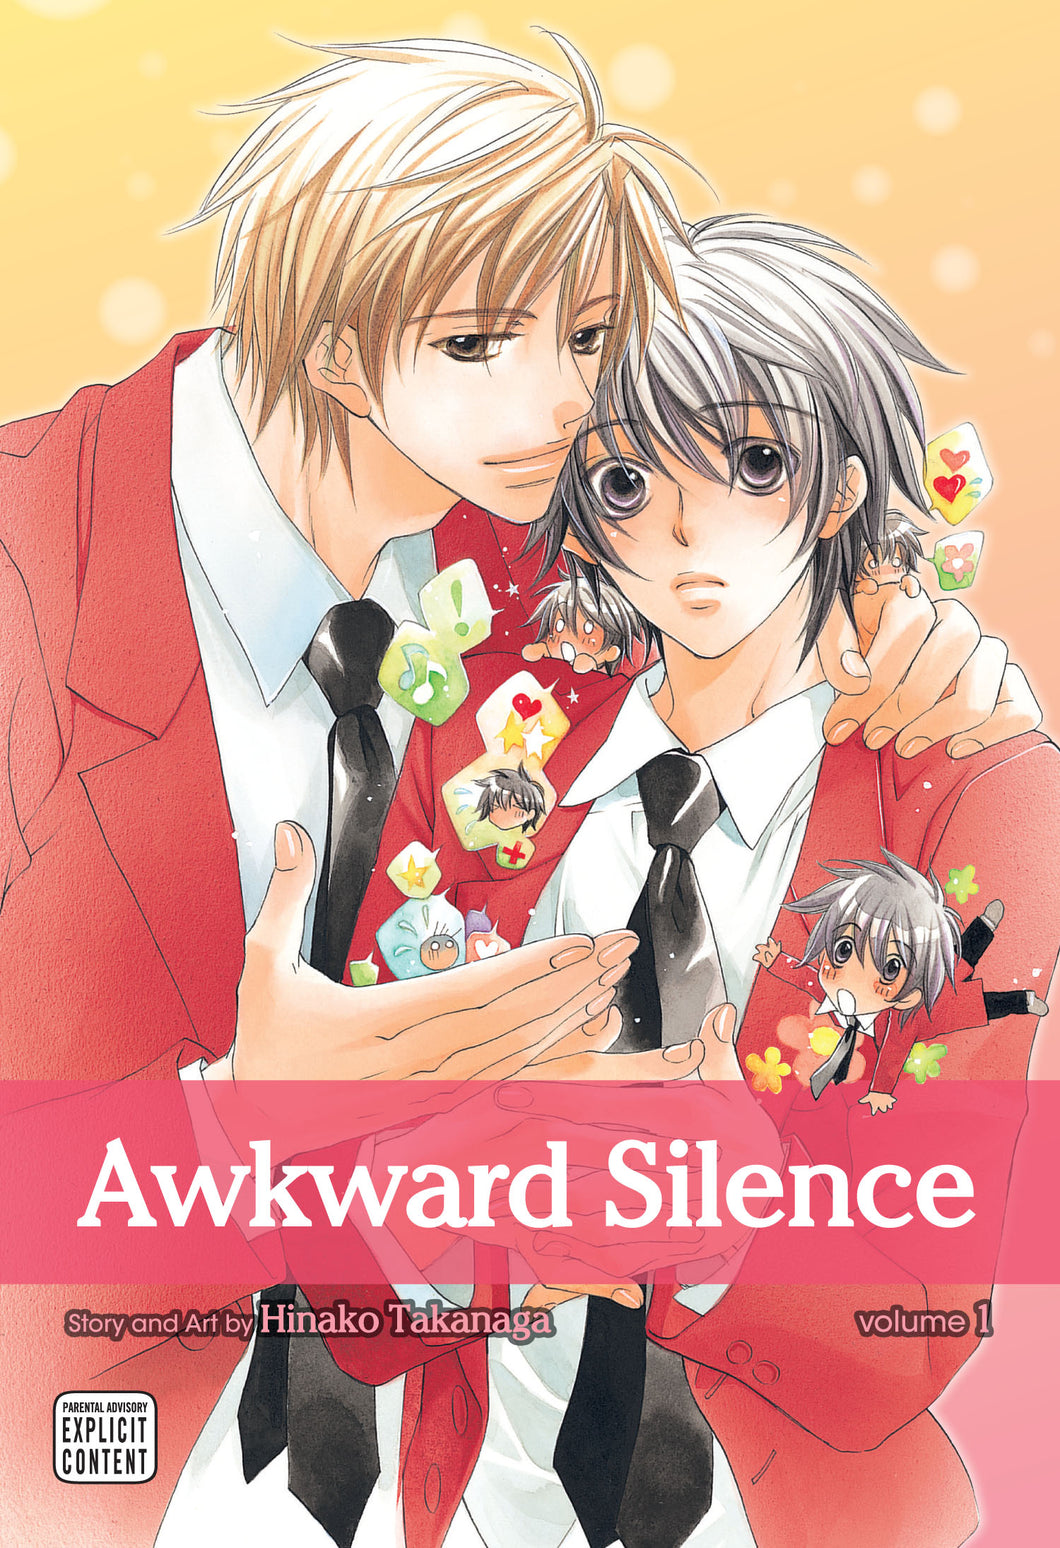 Awkward Silence Volume 1